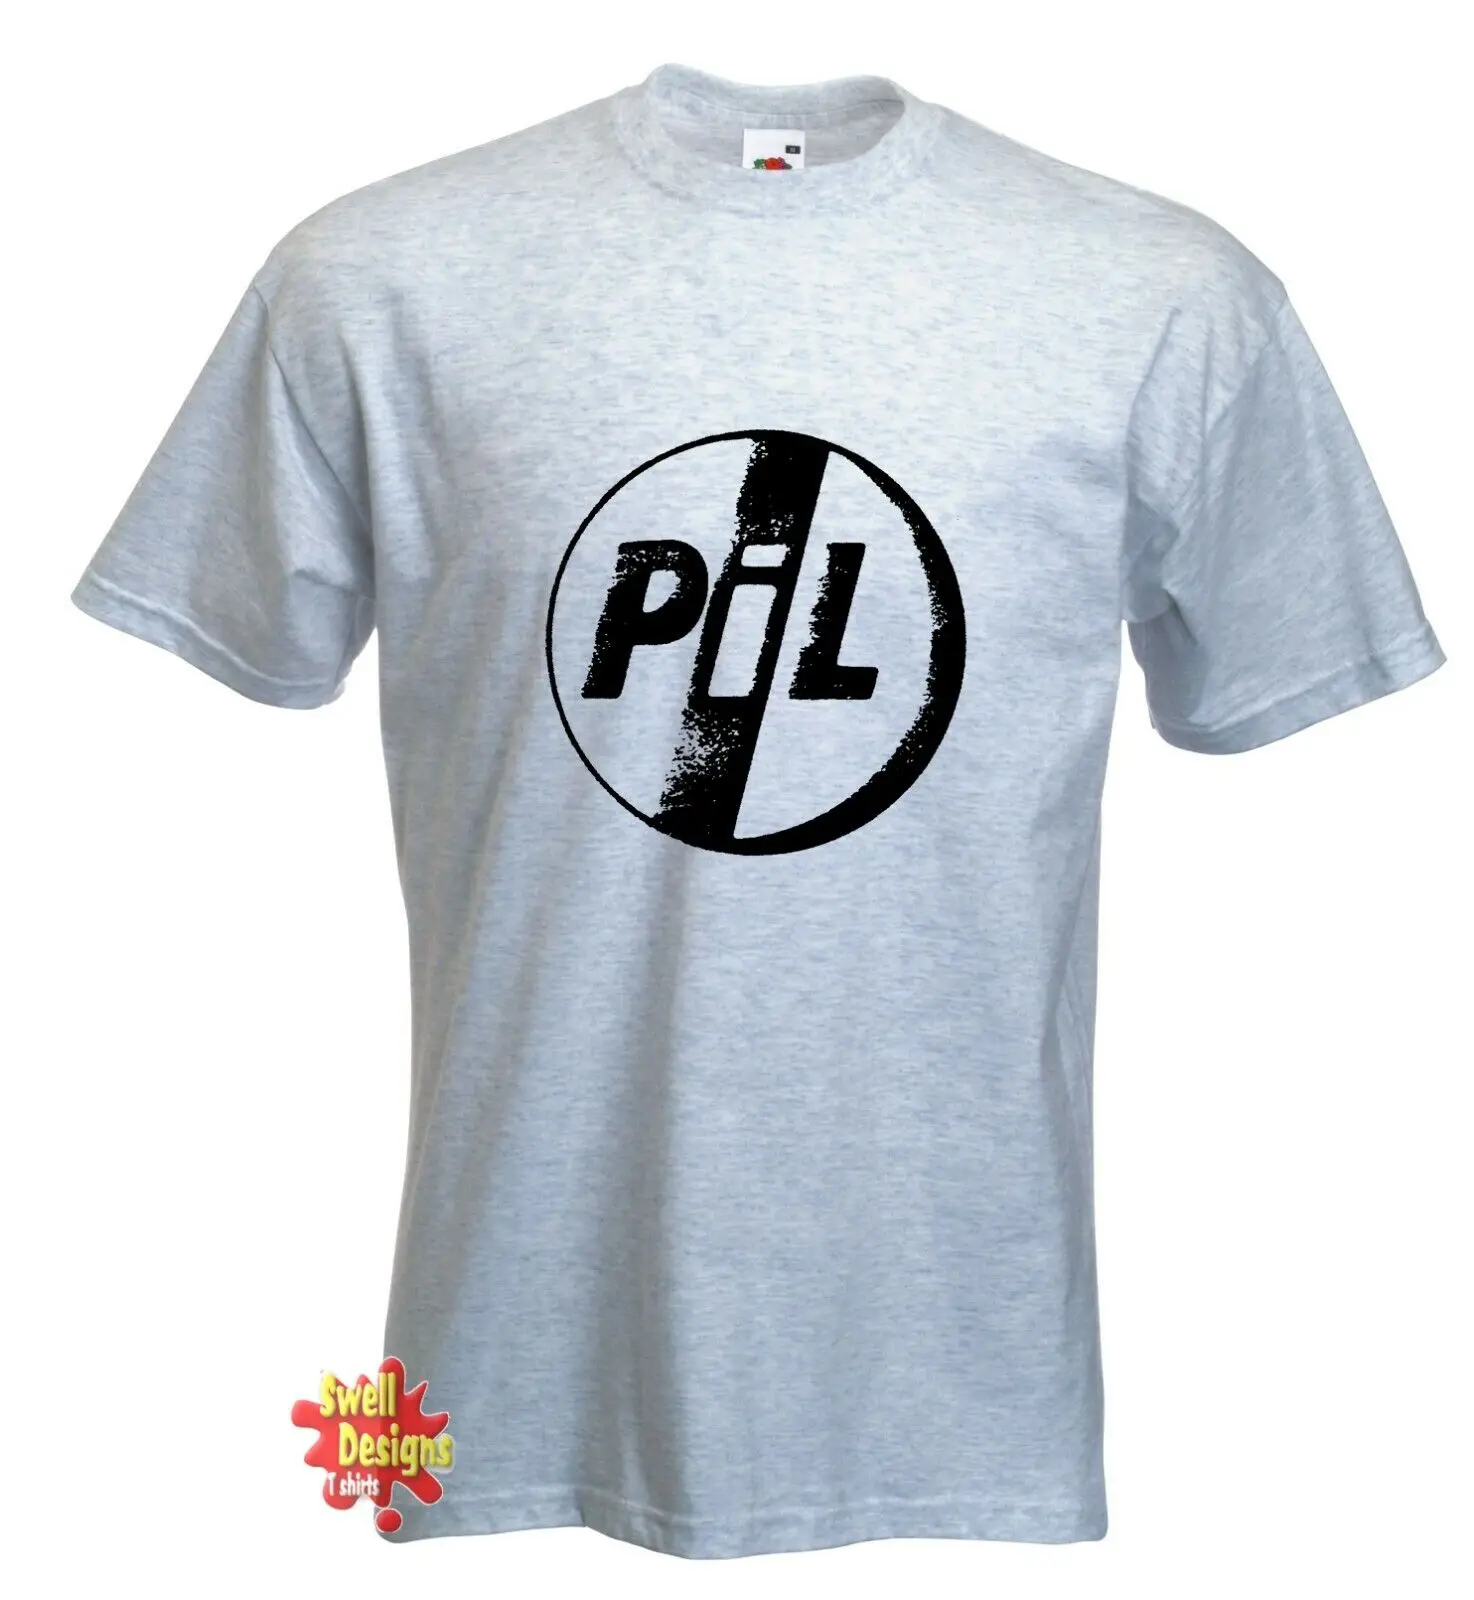 PUBLIC IMAGE LTD, винтажная футболка с потертым логотипом PiL в стиле рок-панк Всех Размеров